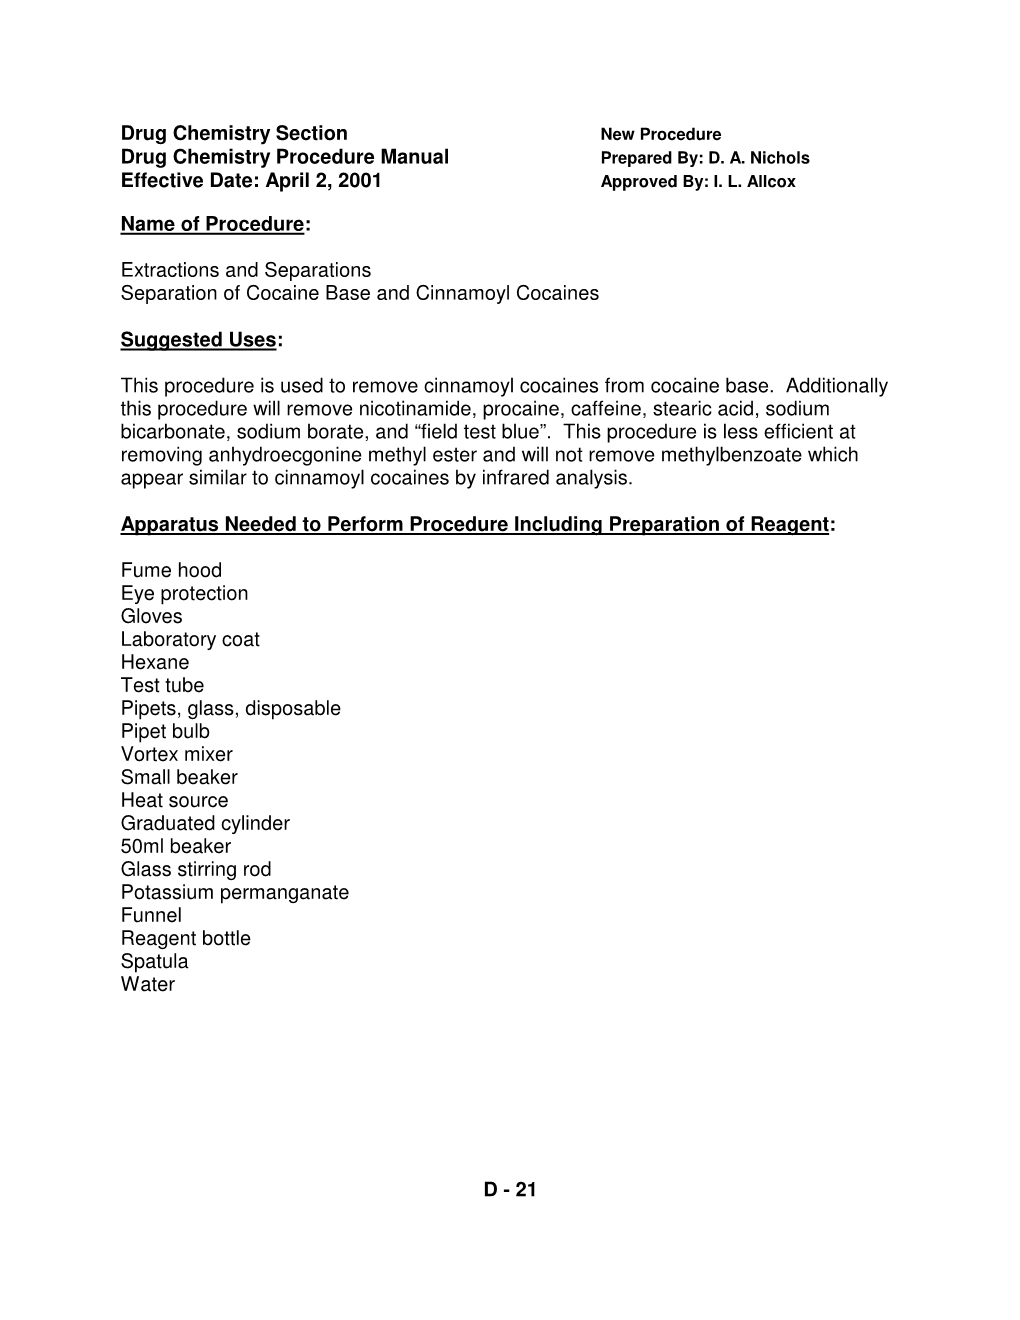 Drug Chemistry Section Drug Chemistry Procedure Manual